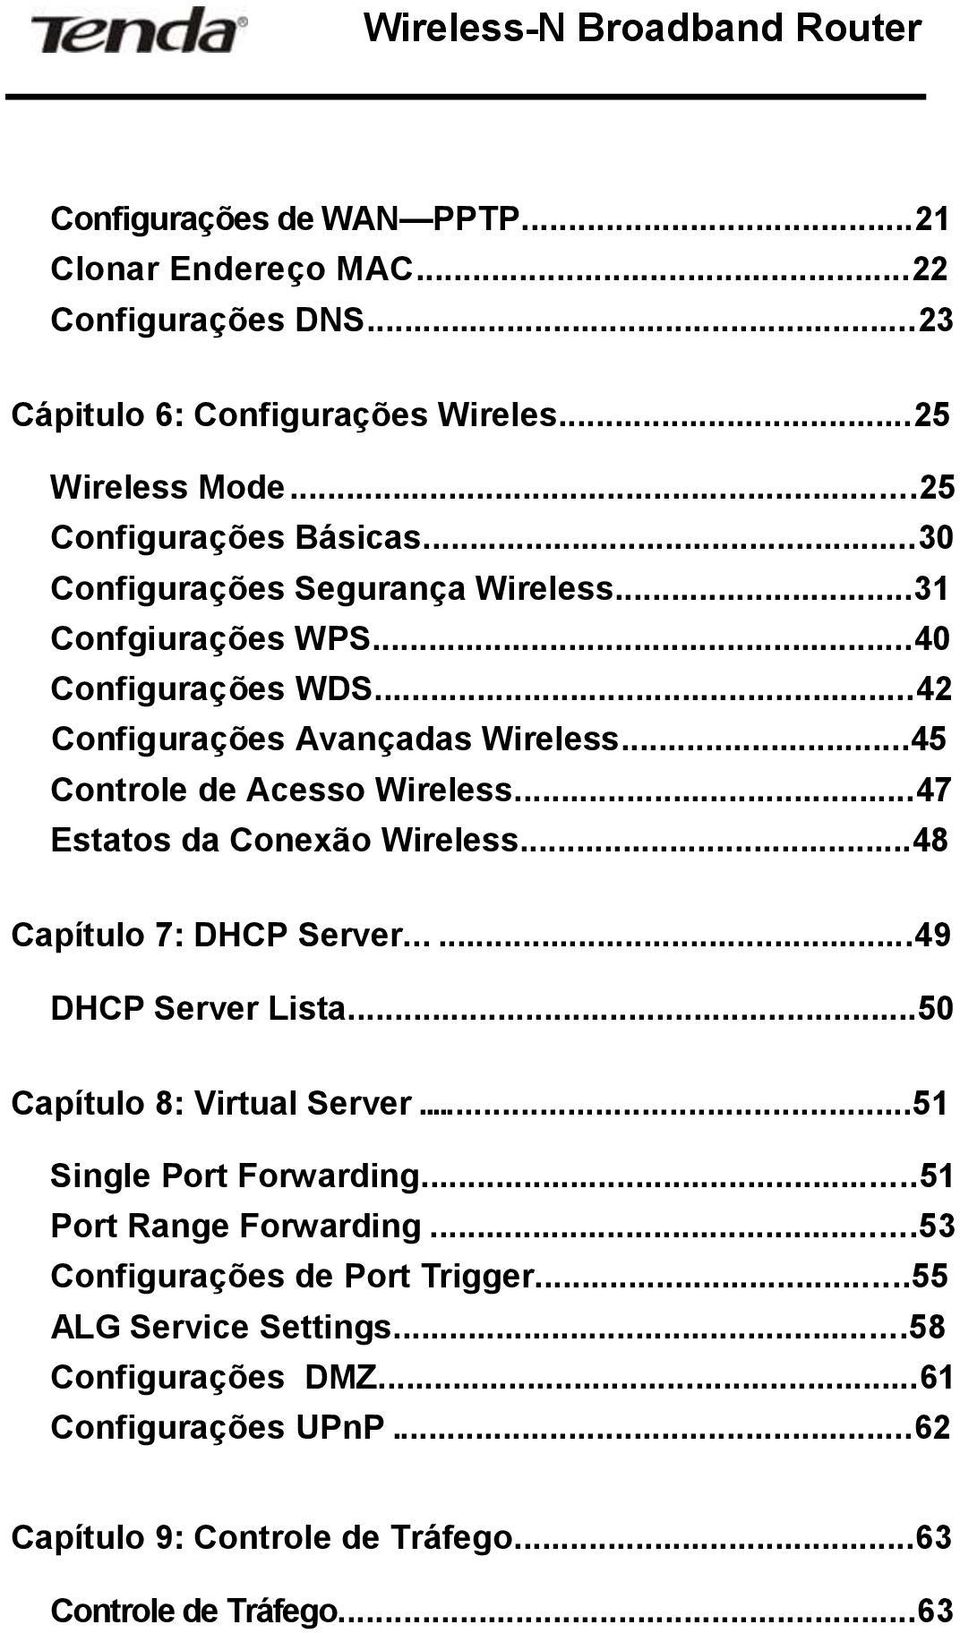 ..47 Estatos da Conexão Wireless...48 Capítulo 7: DHCP Server......49 DHCP Server Lista...50 Capítulo 8: Virtual Server...51 Single Port Forwarding.